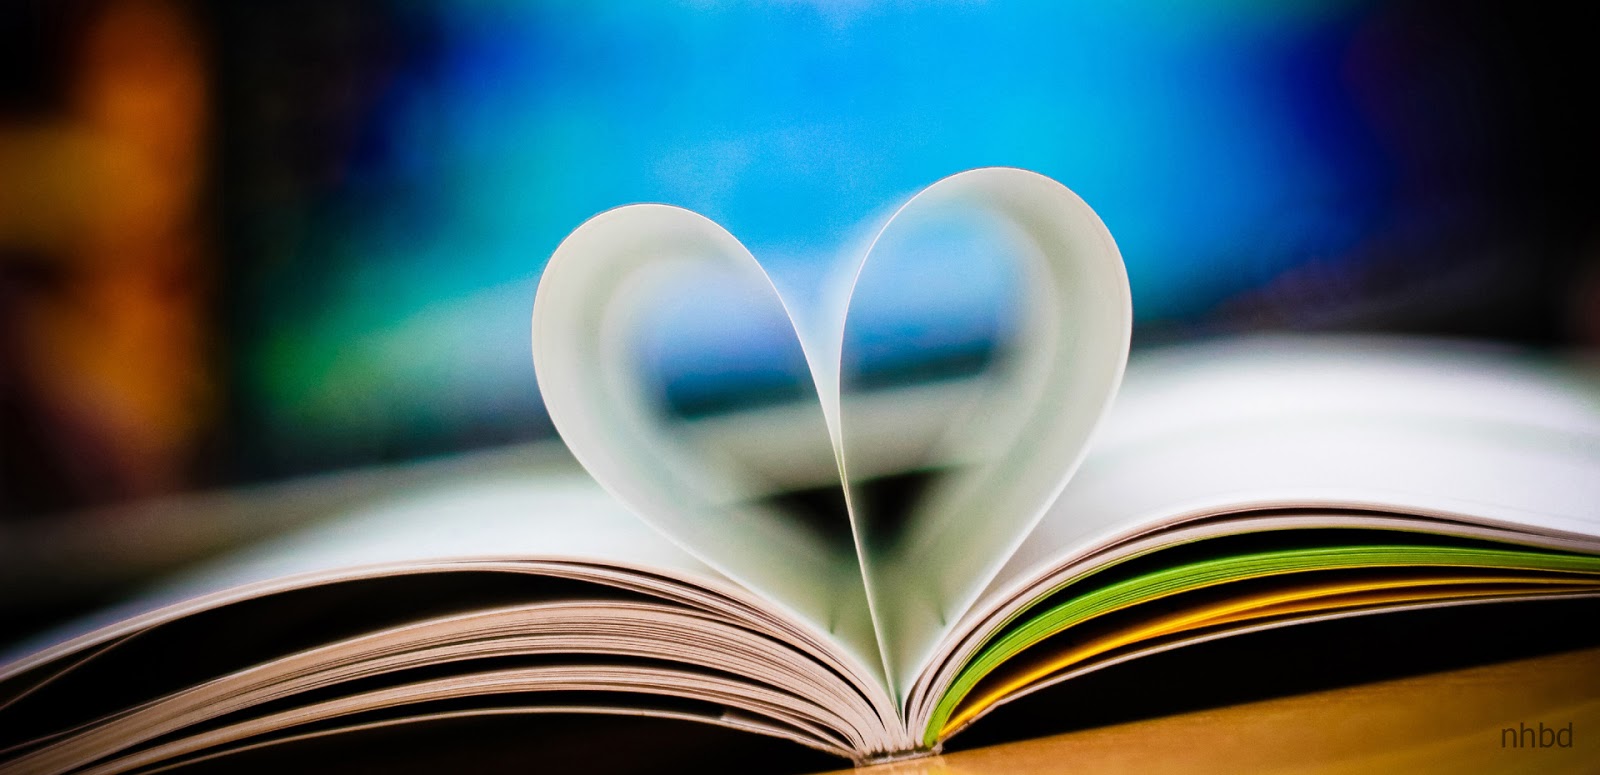 nouveau fond d'écran de l'amour,amour,cœur,livre,en train de lire,photographie de stock